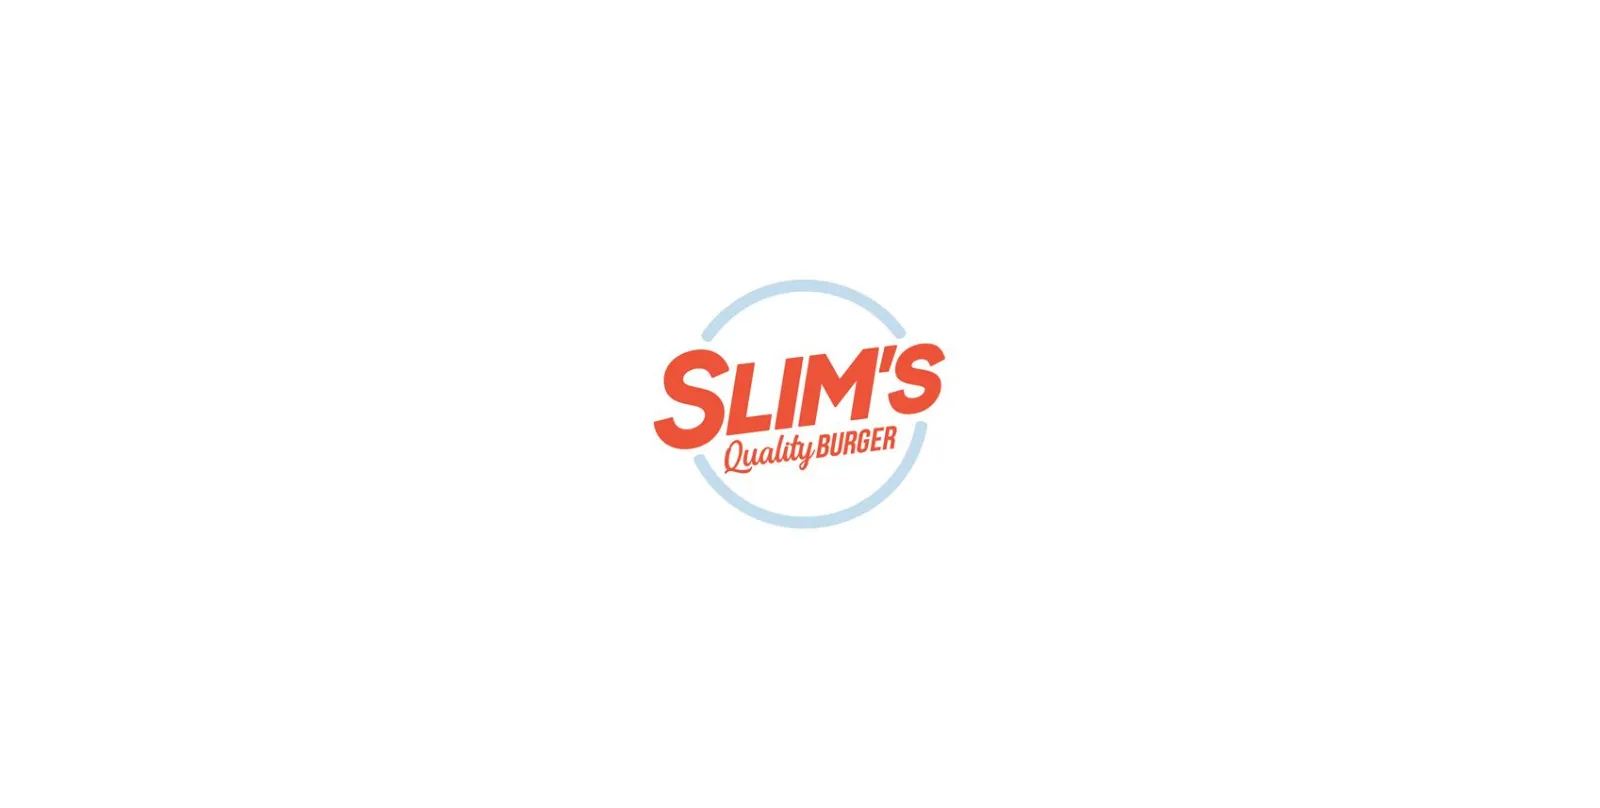 Slim’s Quality Burger menu prices in australia